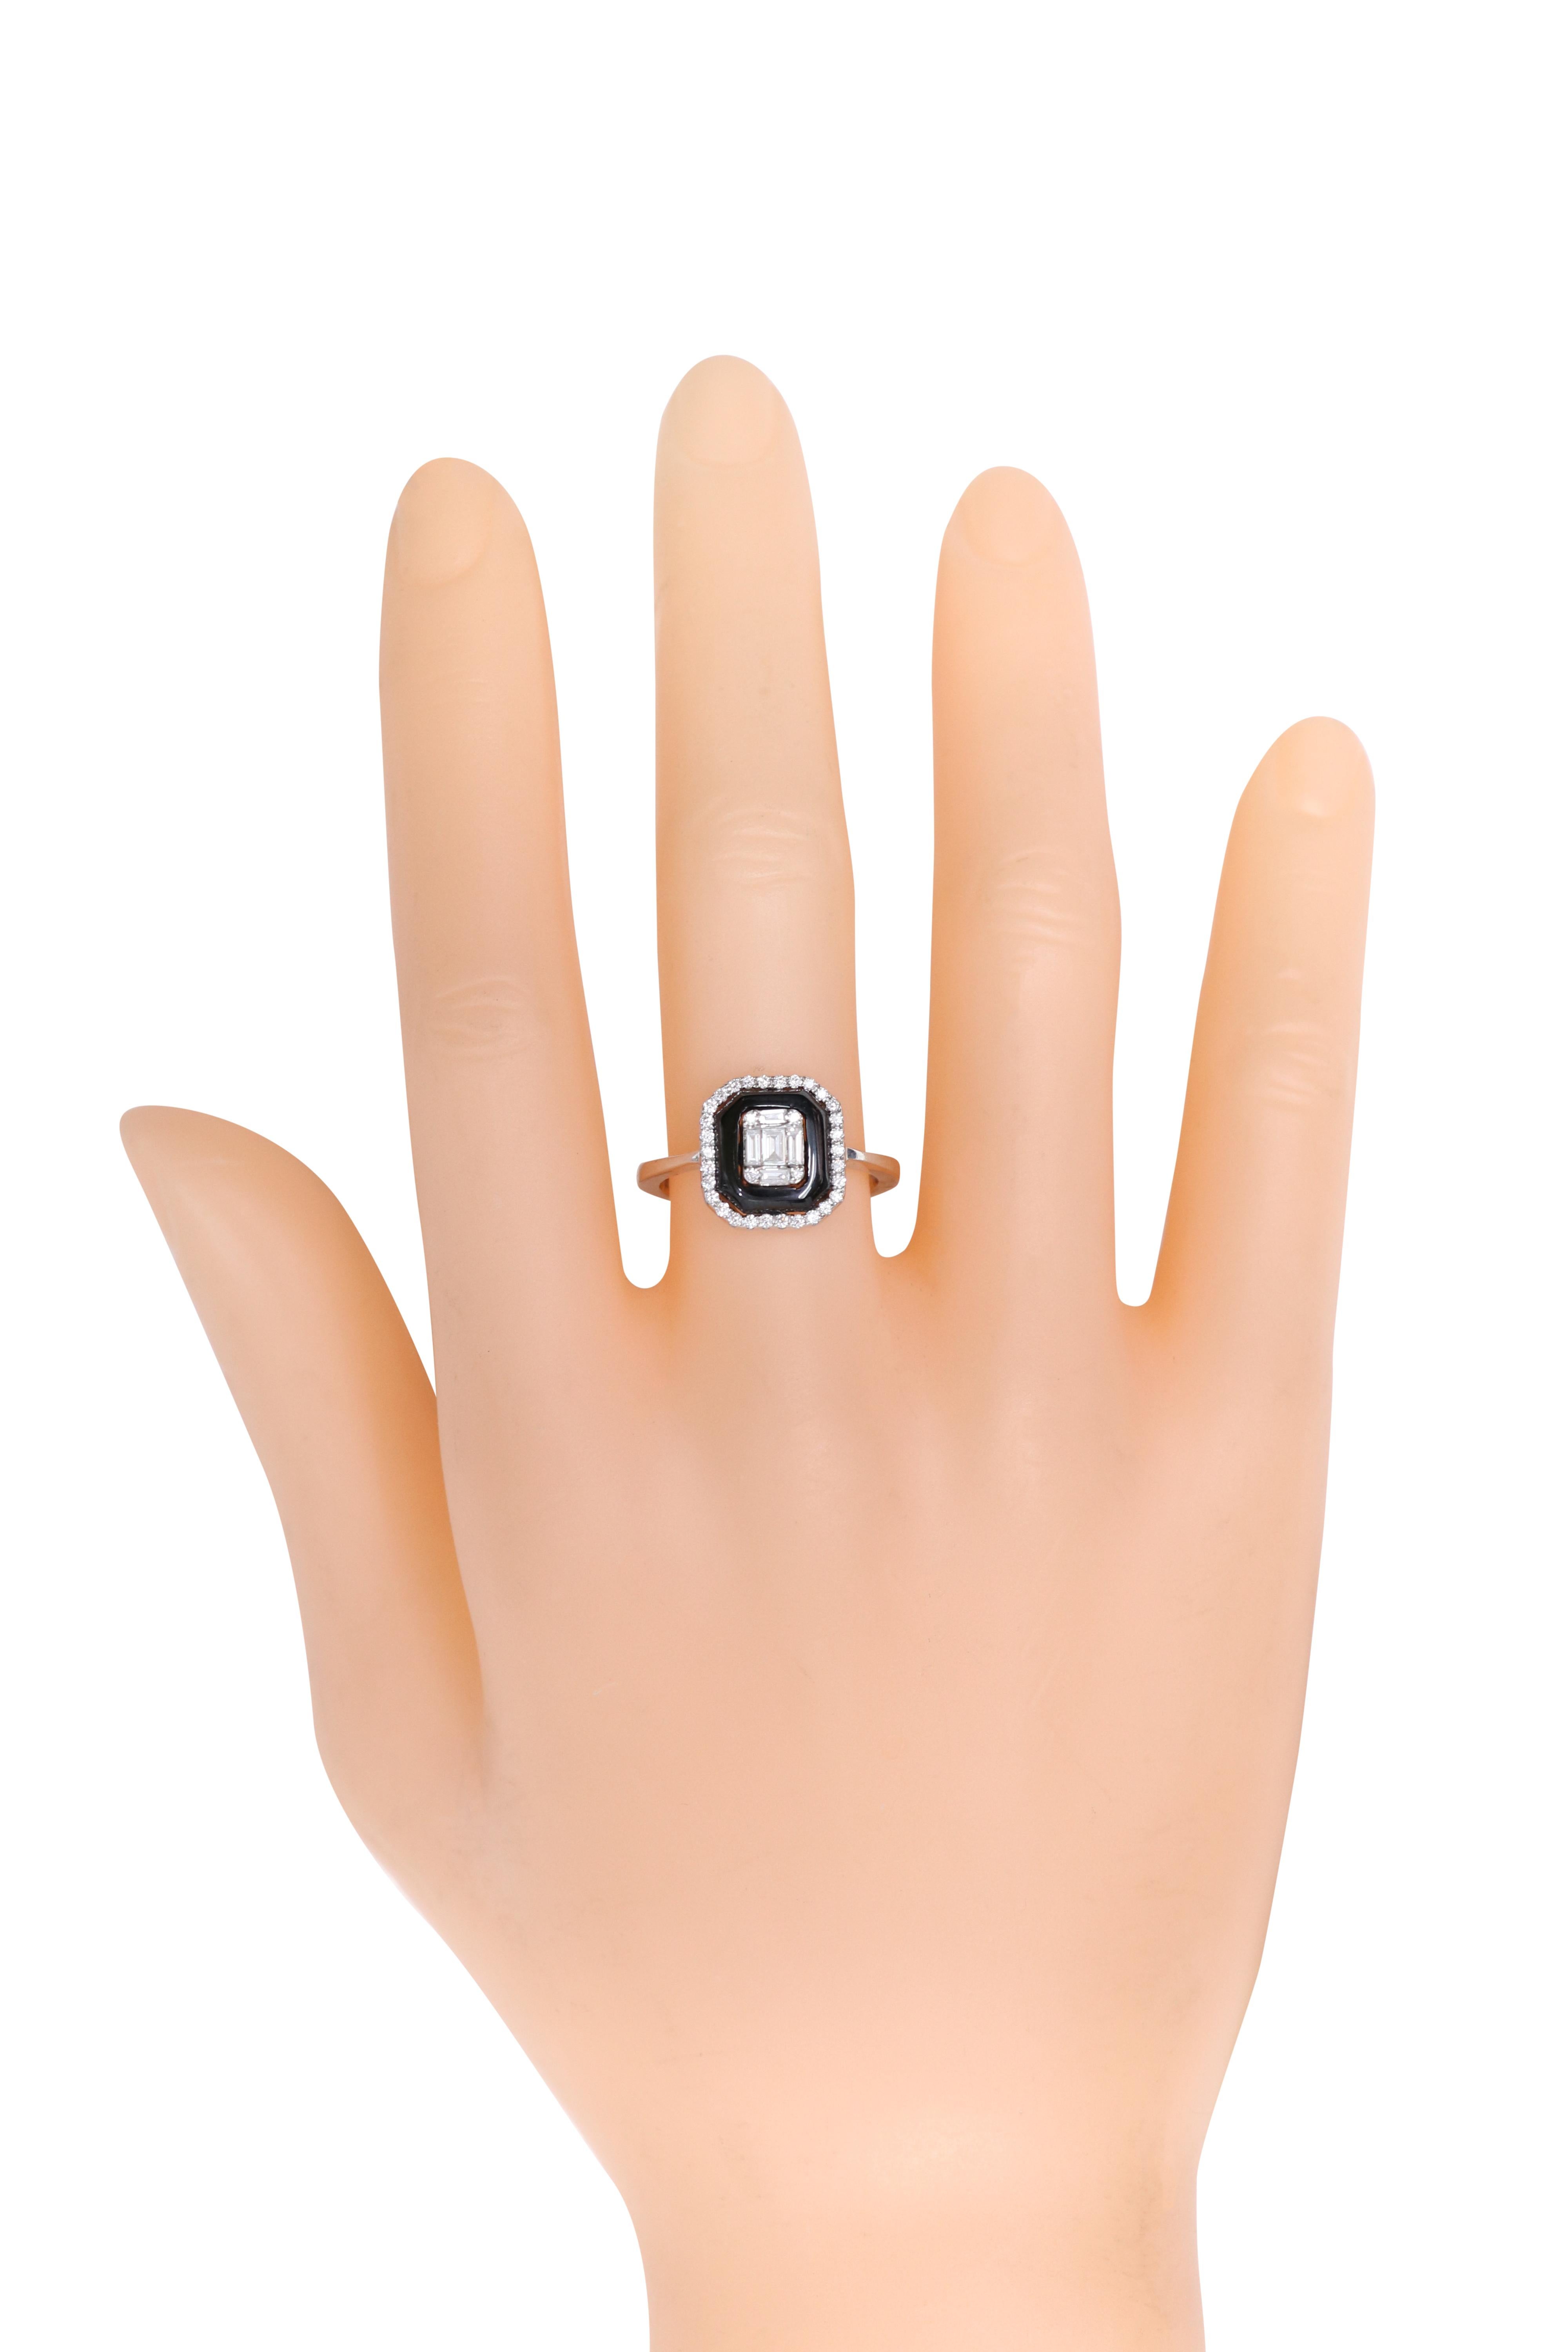 18 Karat Weißgold Diamant und schwarzer Onyx Mode-Ring

Brillanz und Glanz in Collaboration mit Schlichtheit ist das, was dieser wunderschöne Ring zu bieten hat. Mit seinem Baguetteschliff und dem Diamant im Brillantschliff in der Mitte ist dieser